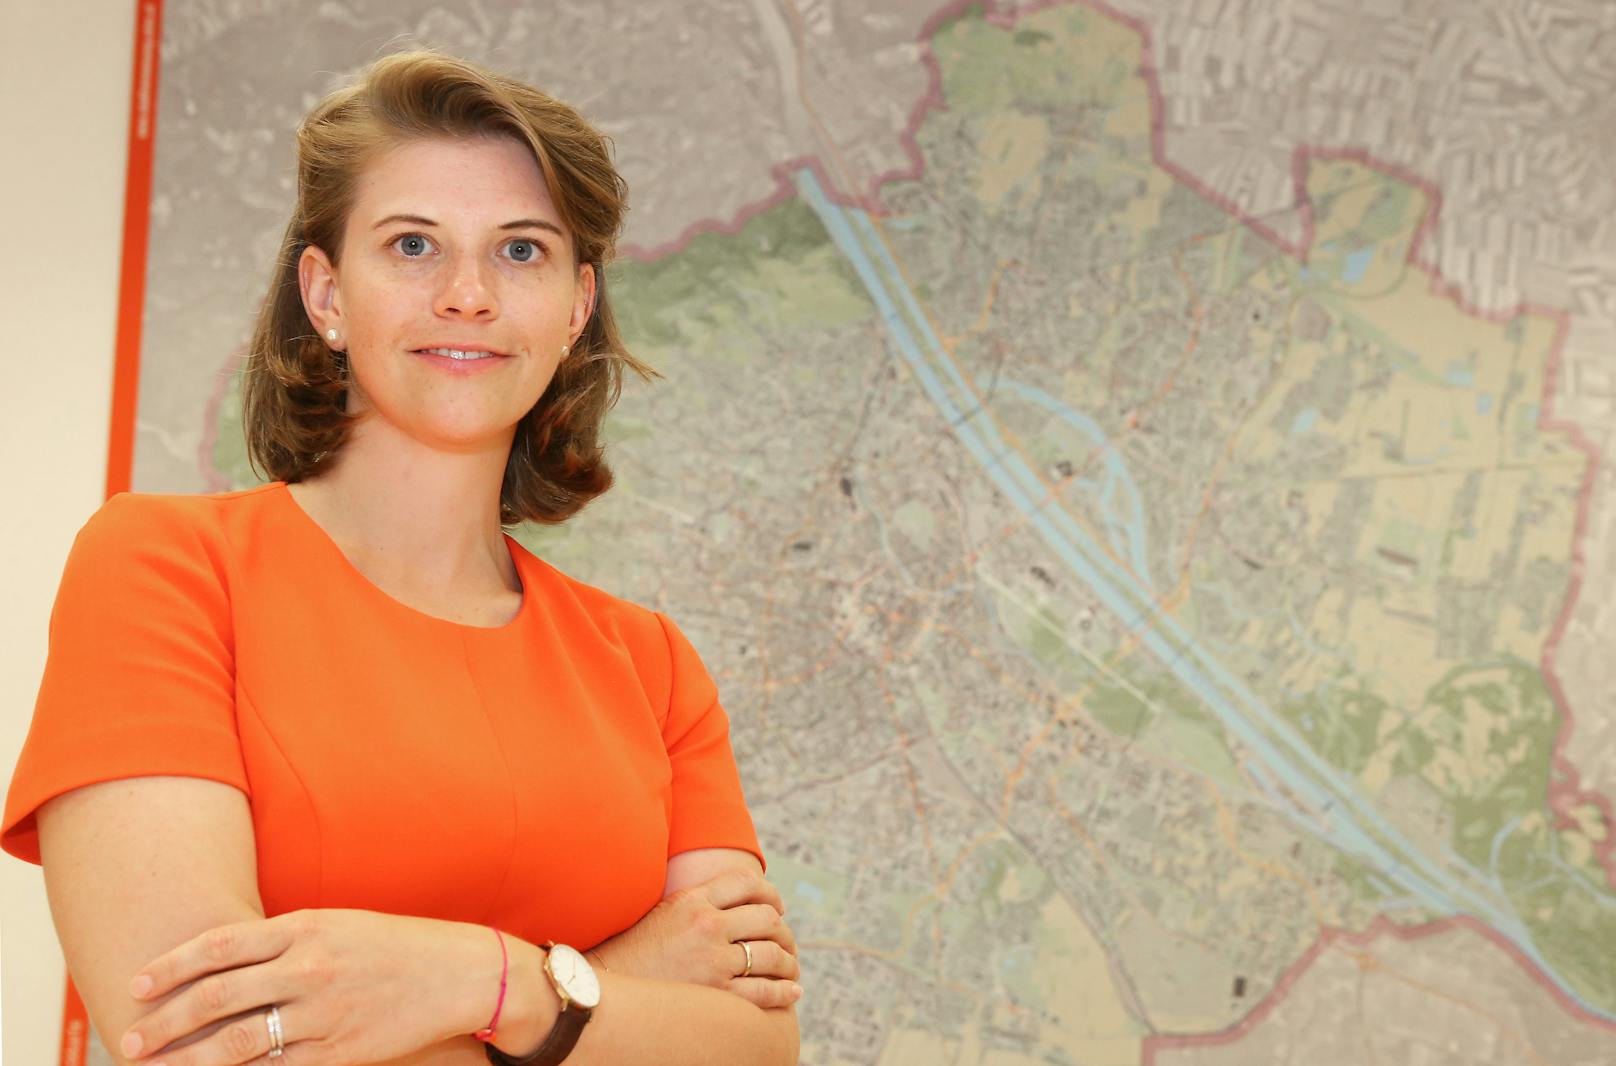 ÖVP-Klubchefin Elisabeth Olischar fordert einen Bezirksentwicklungsplan für die Donaustadt, "damit sie lebenswert bleibt".